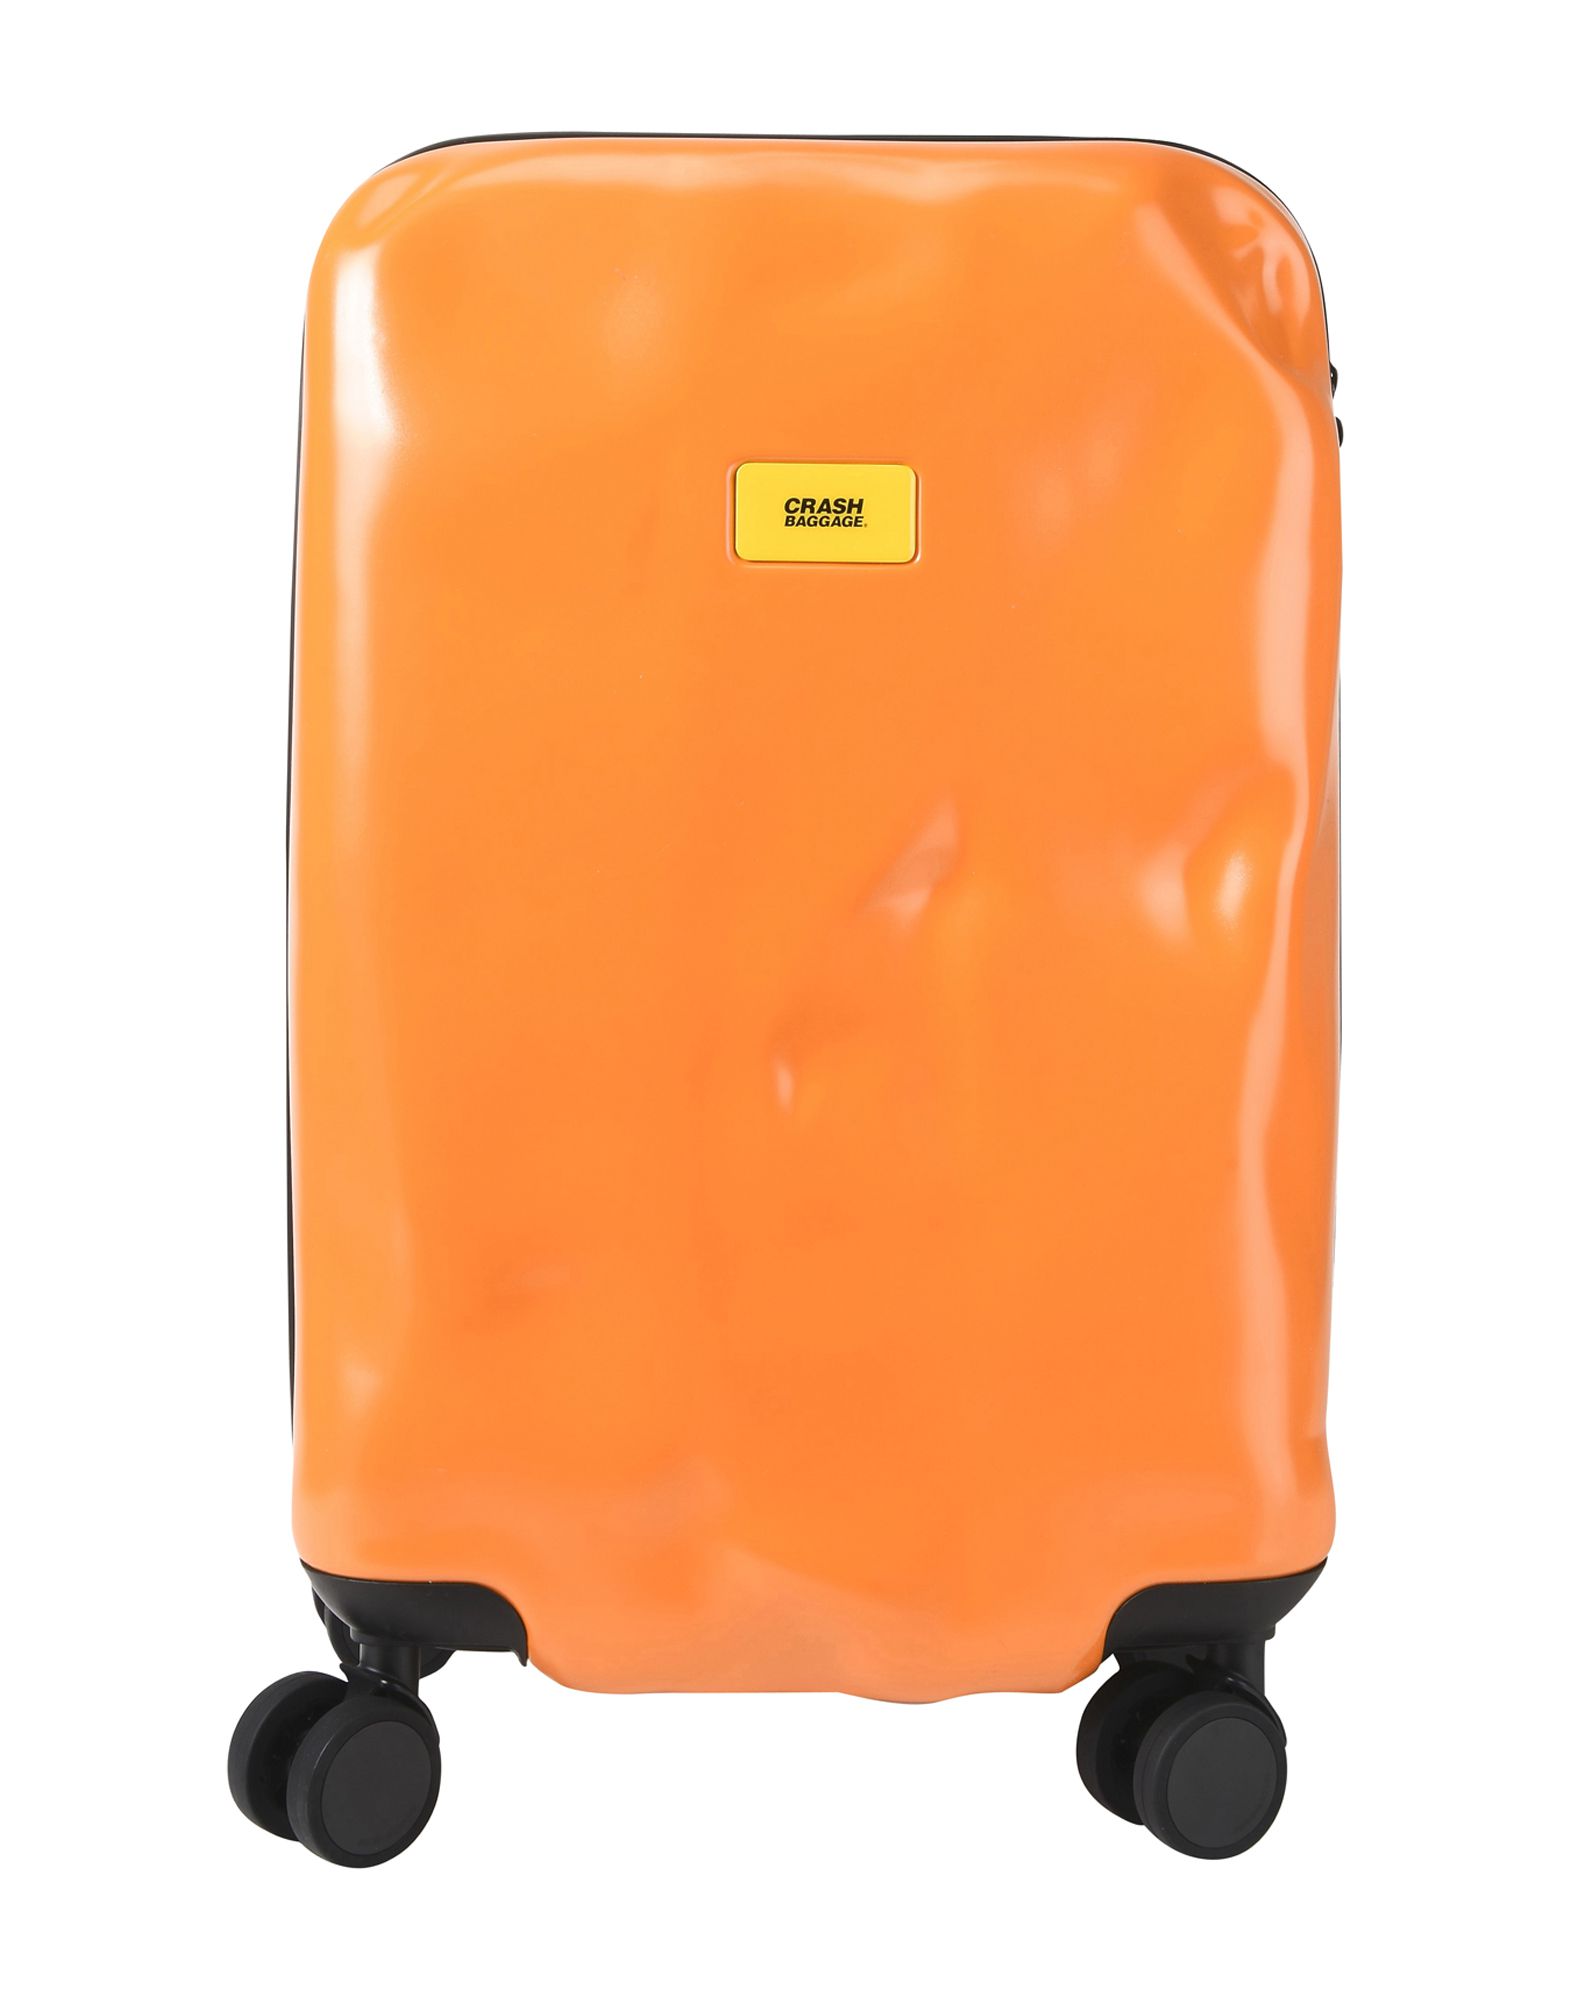 《送料無料》CRASH BAGGAGE Unisex キャスター付きバッグ オレンジ ポリカーボネート PIONEER Cabin 4w.